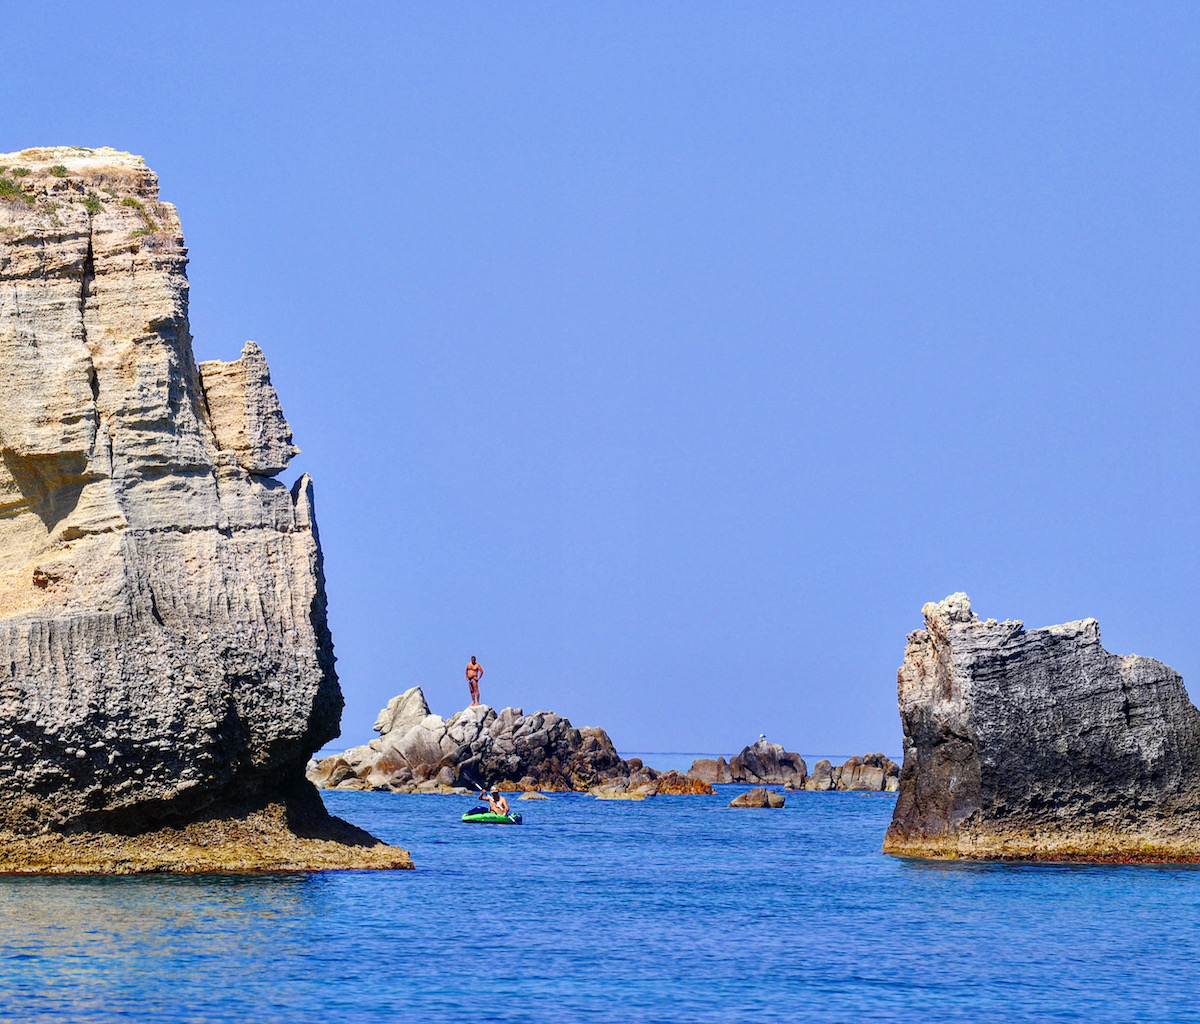 Coast of The Gods Calabria Italy

